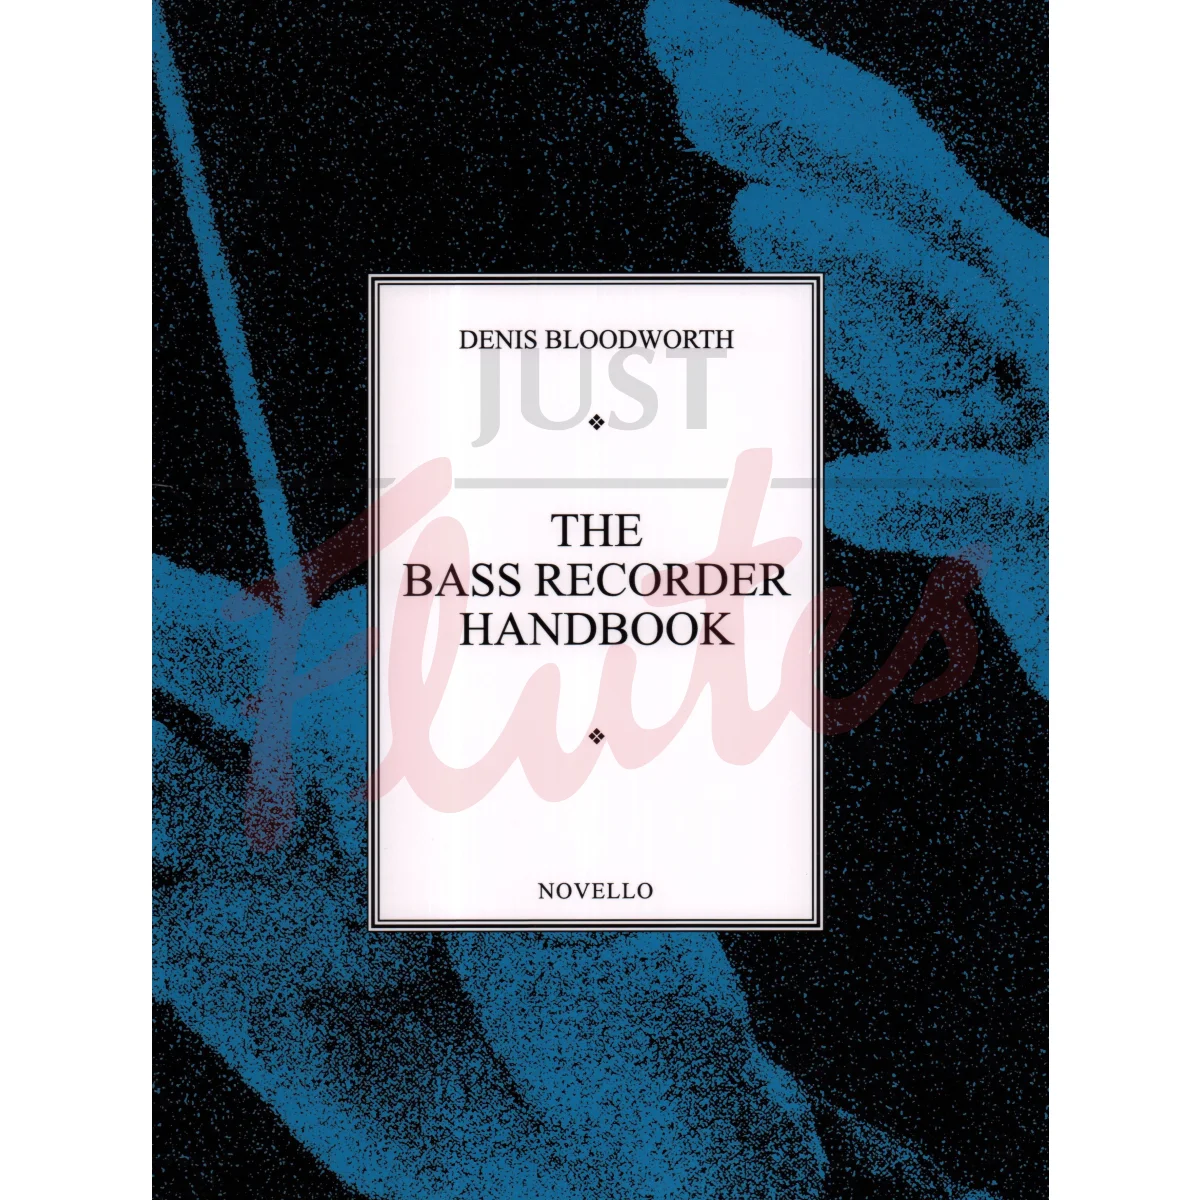 The Bass Recorder Handbook